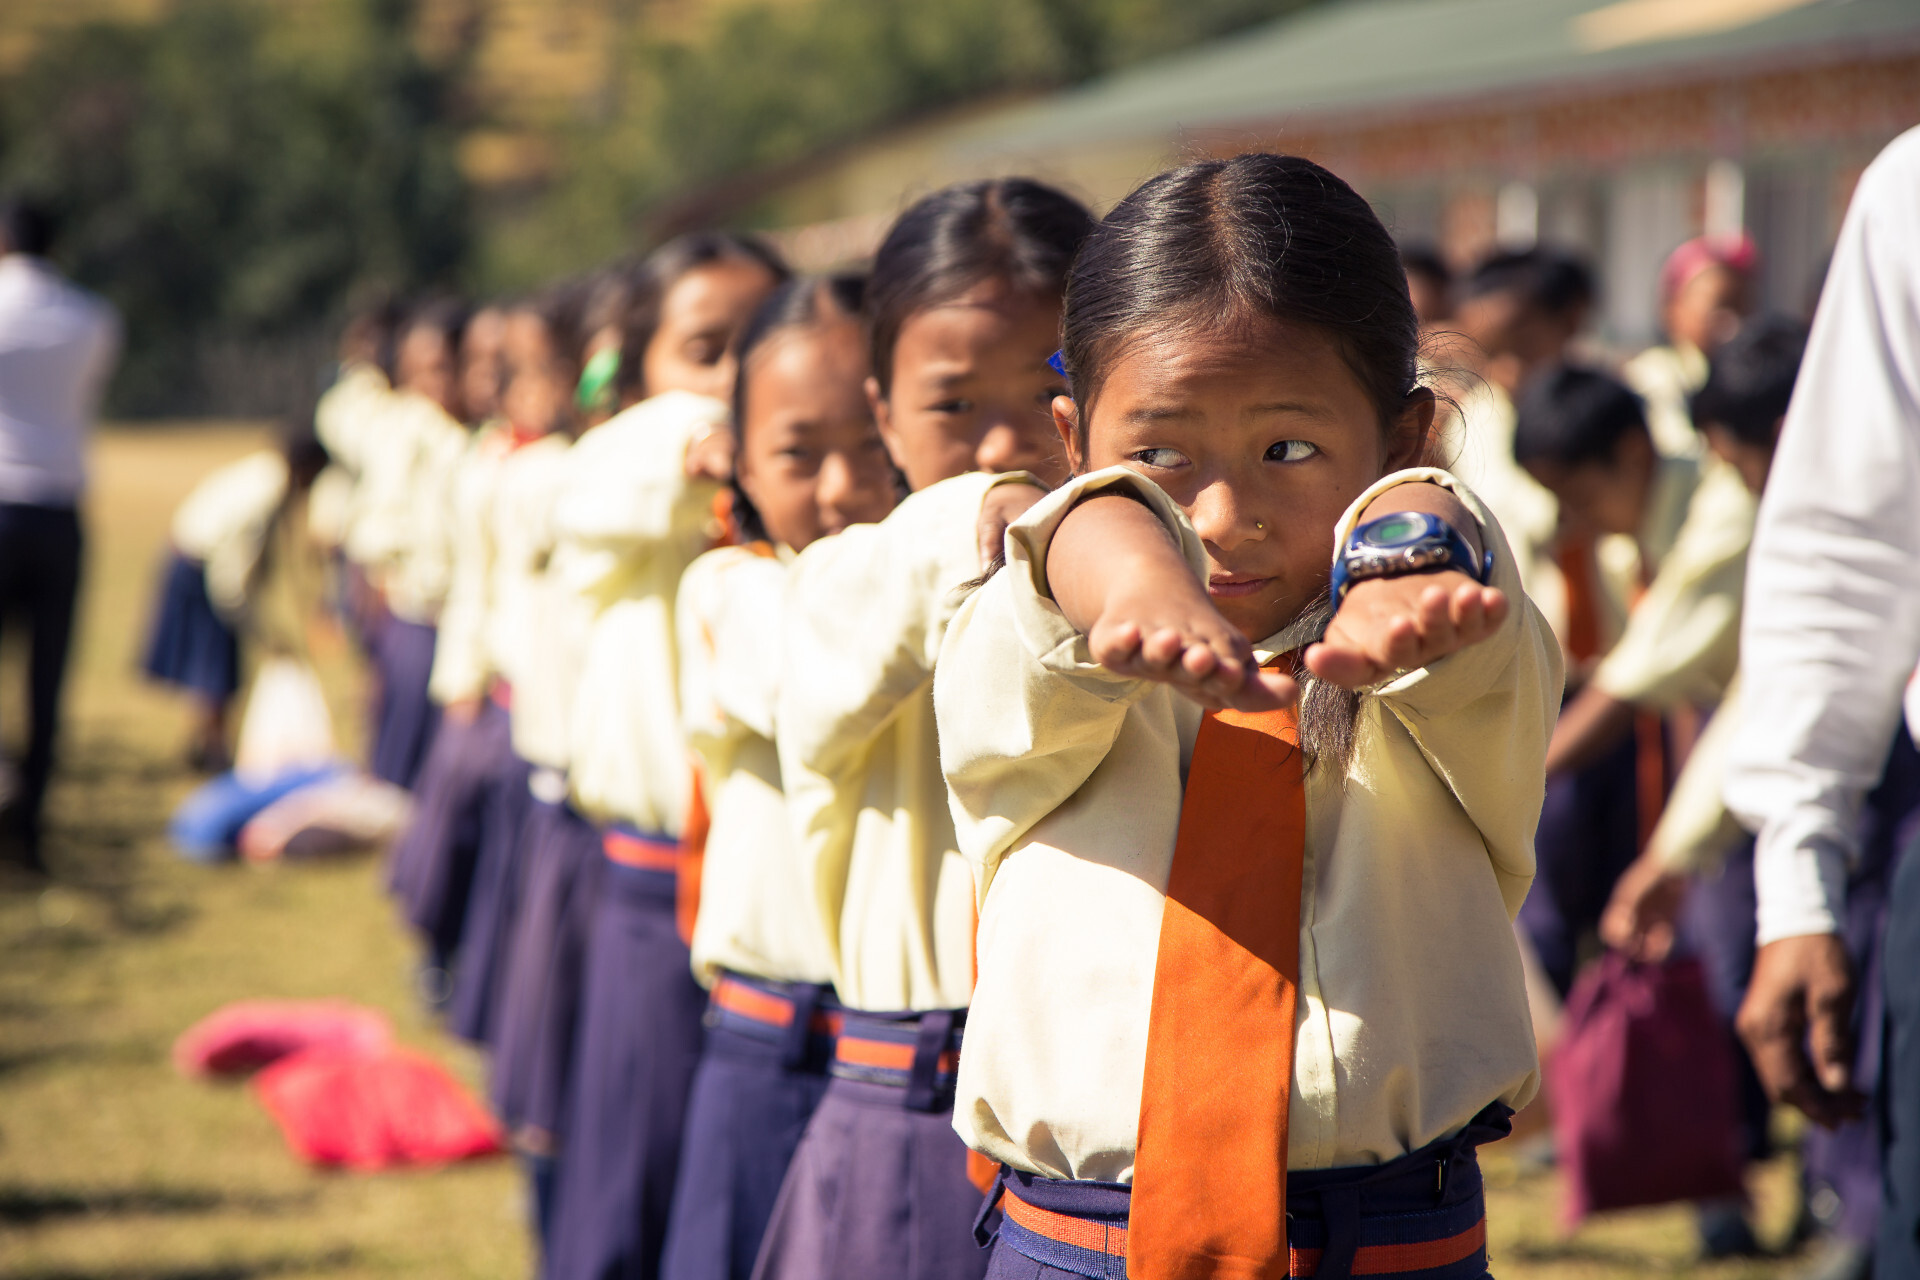 Petekinderen in Nepal